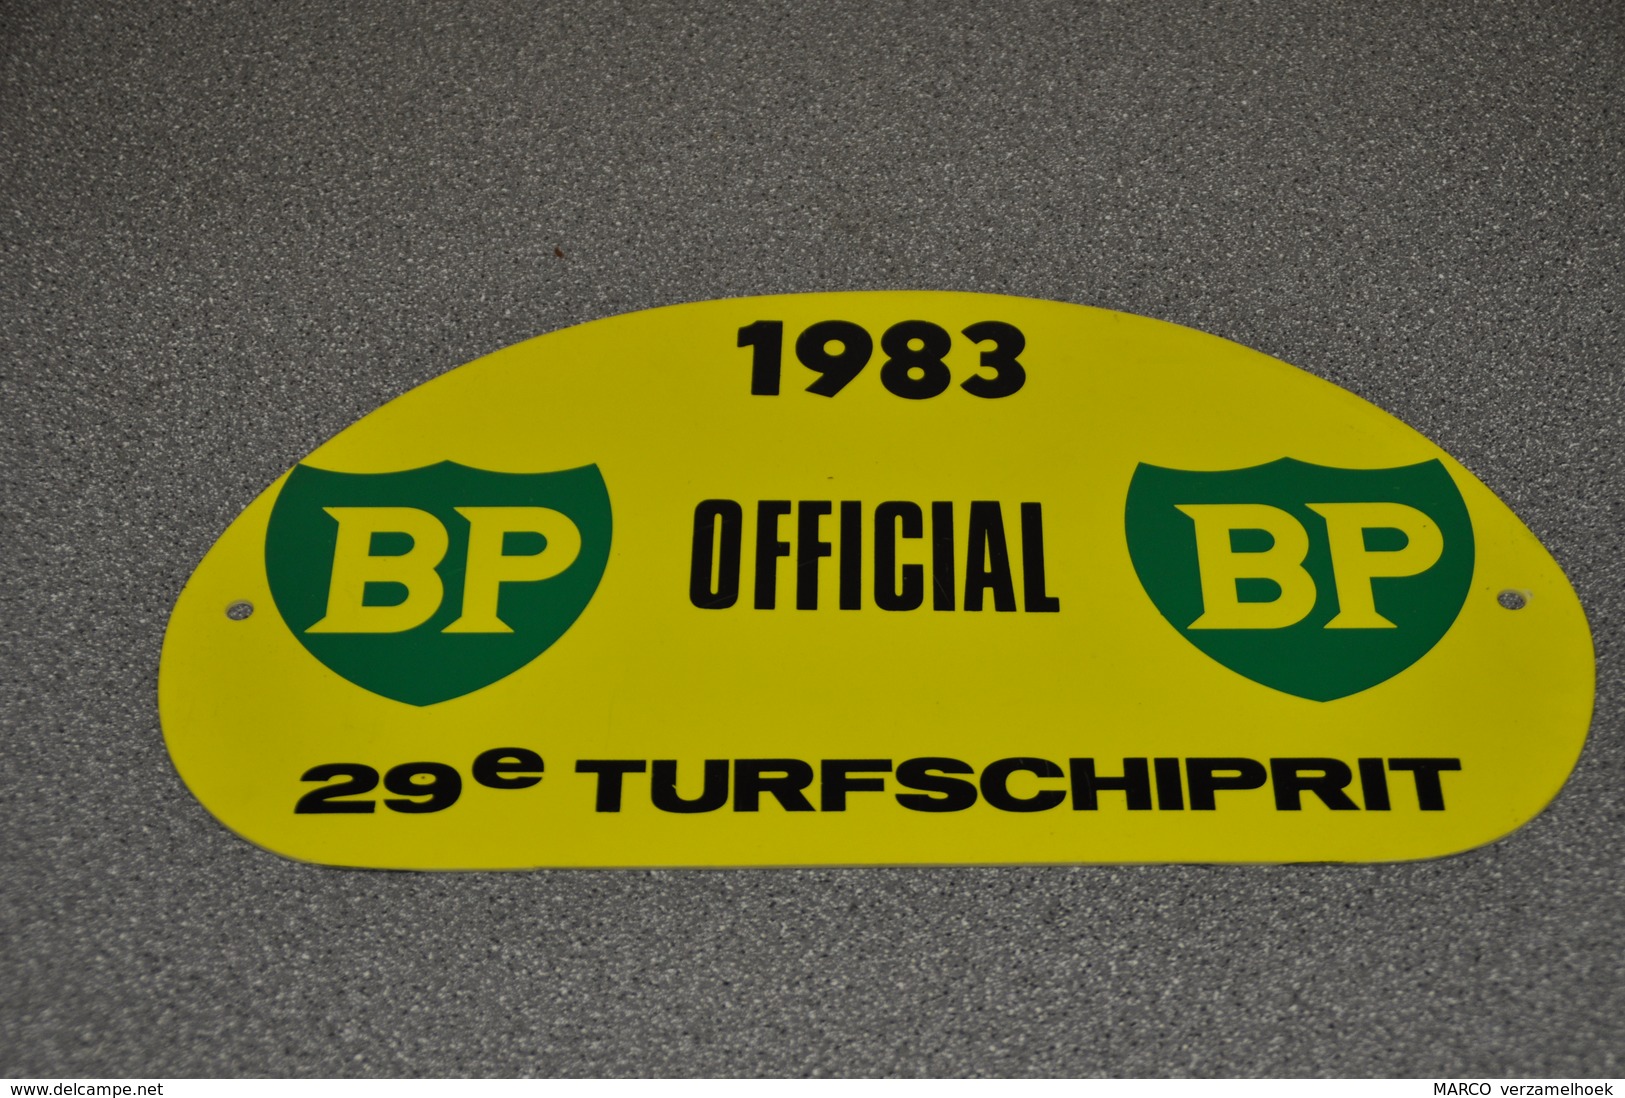 Rally Plaat-rallye Plaque Plastic: 29e Turfschiprit Breda 1983 OFFICIAL BP - Plaques De Rallye